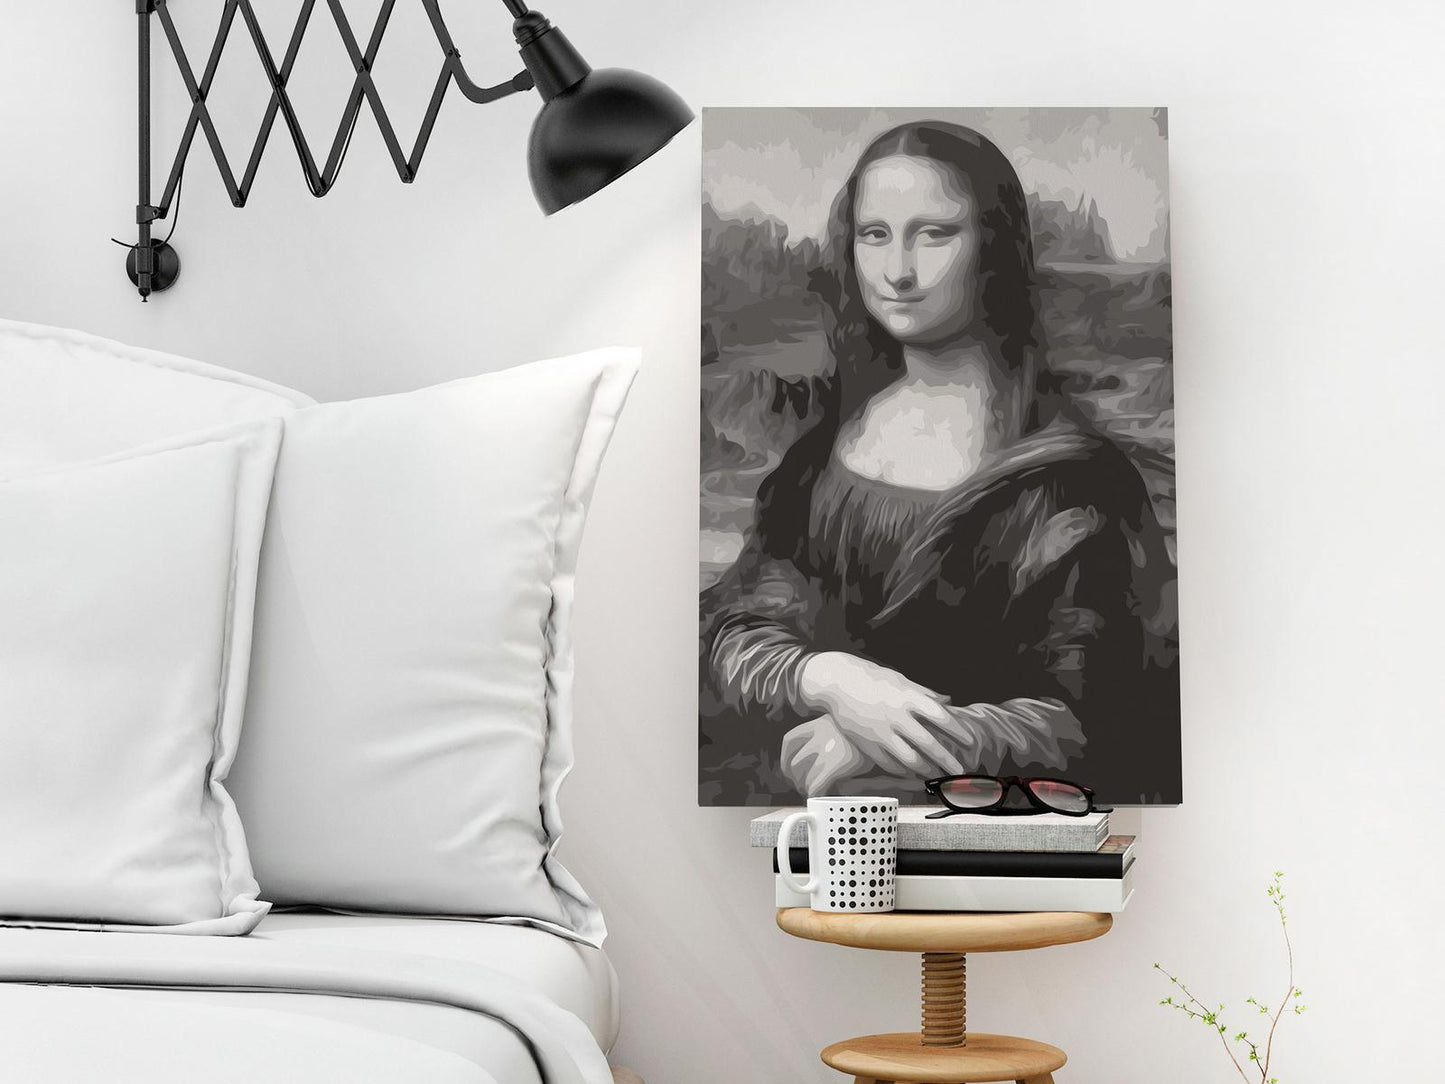 Doe-het-zelf op canvas schilderen - Black and White Mona Lisa